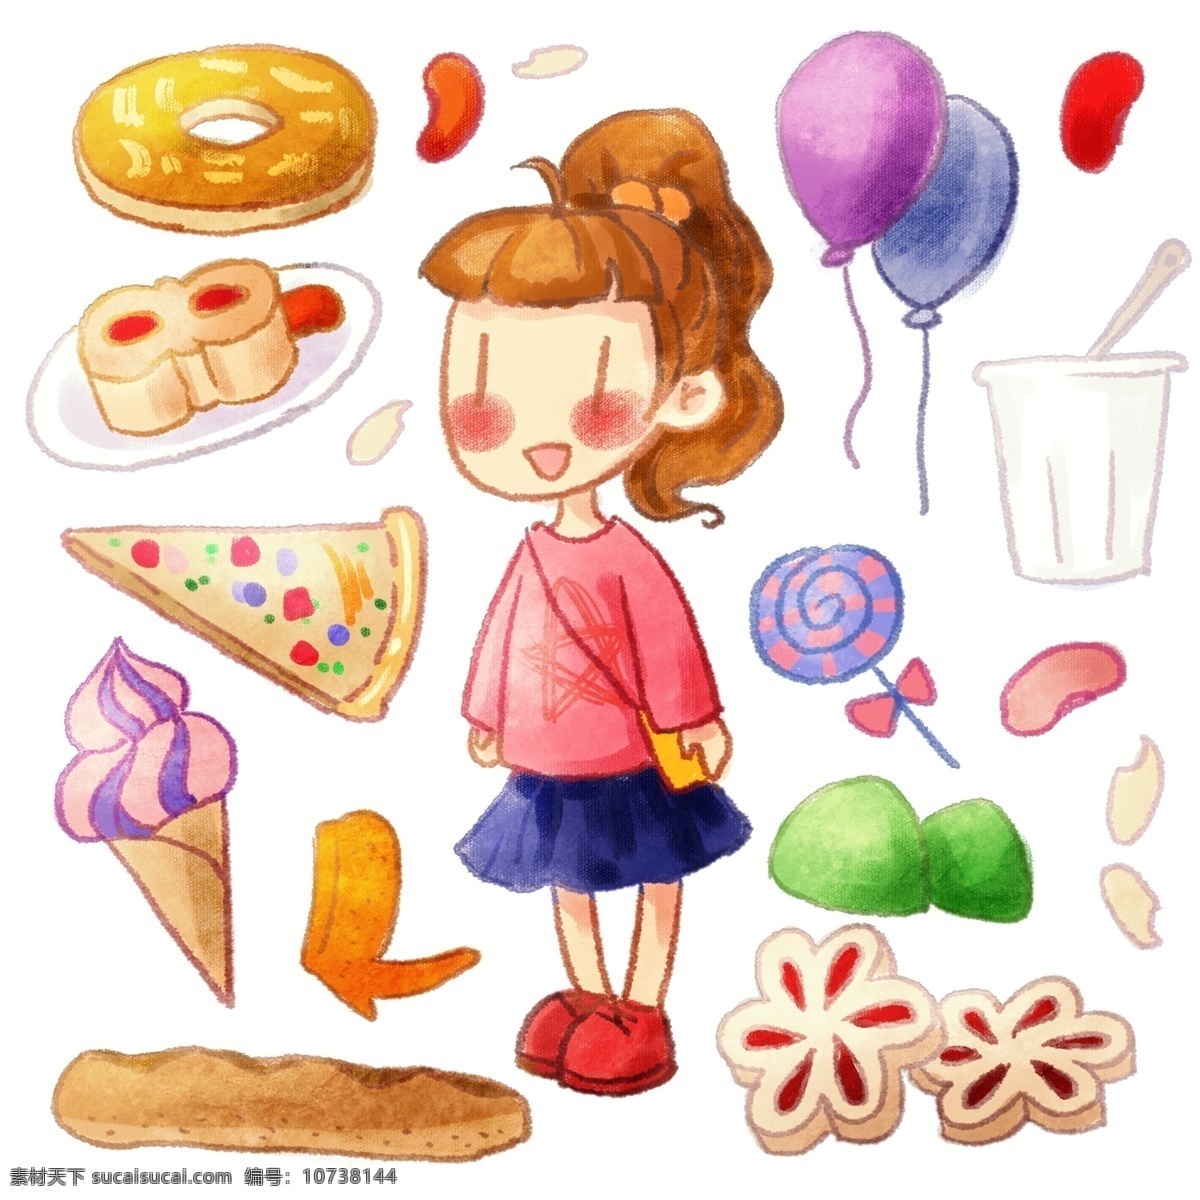 手绘 可爱 女孩 美食 气球 甜甜 圈 披萨 冰淇淋 甜甜圈 枣花糕 早餐 健康 减肥 卡路里 鸡翅